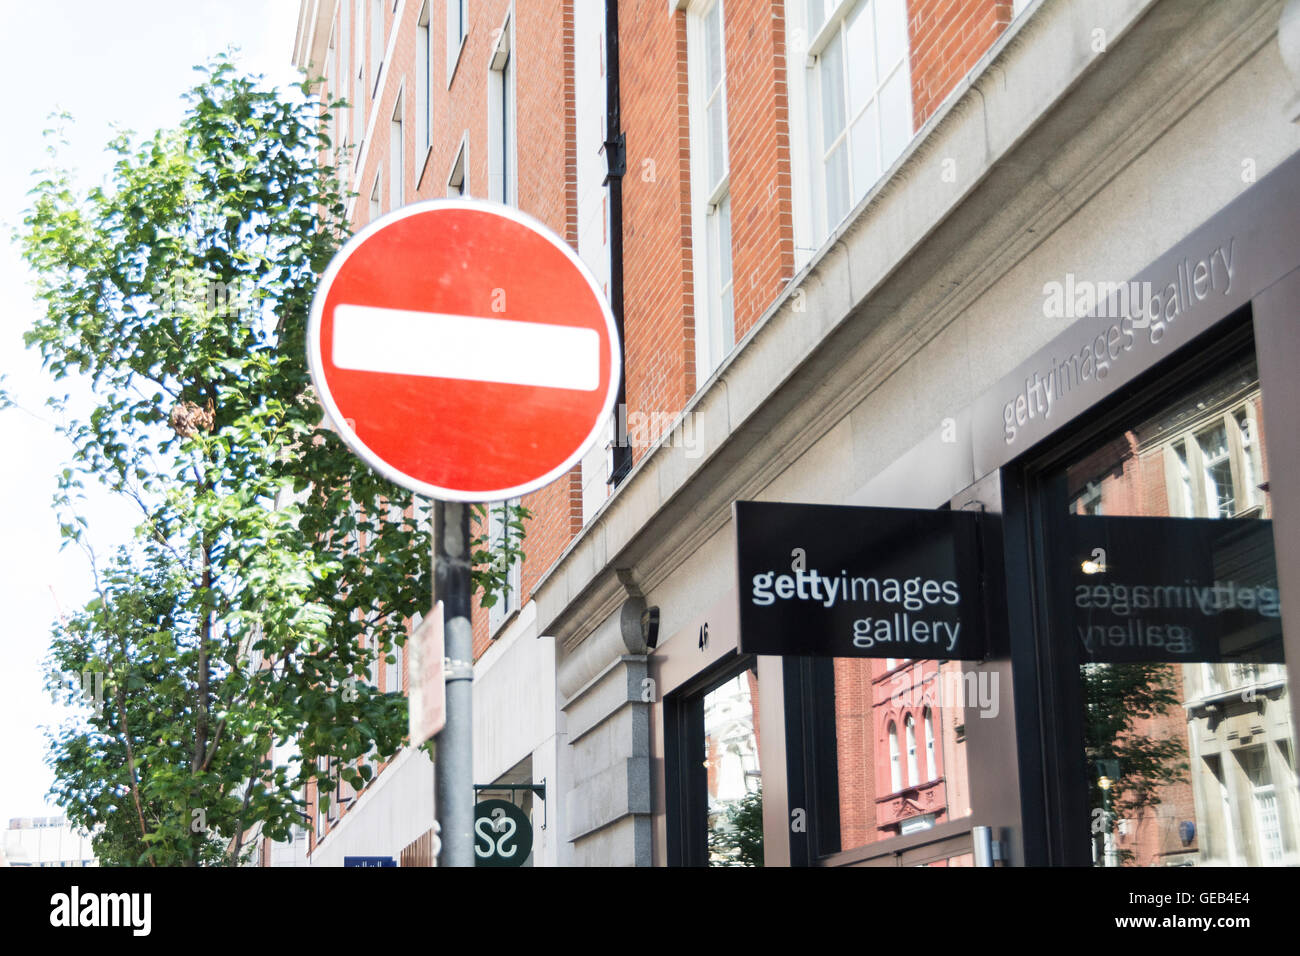 Un cartello di non ingresso fuori dalla Getty Images Gallery su Eastcastle Street, Londra, Inghilterra, Regno Unito Foto Stock